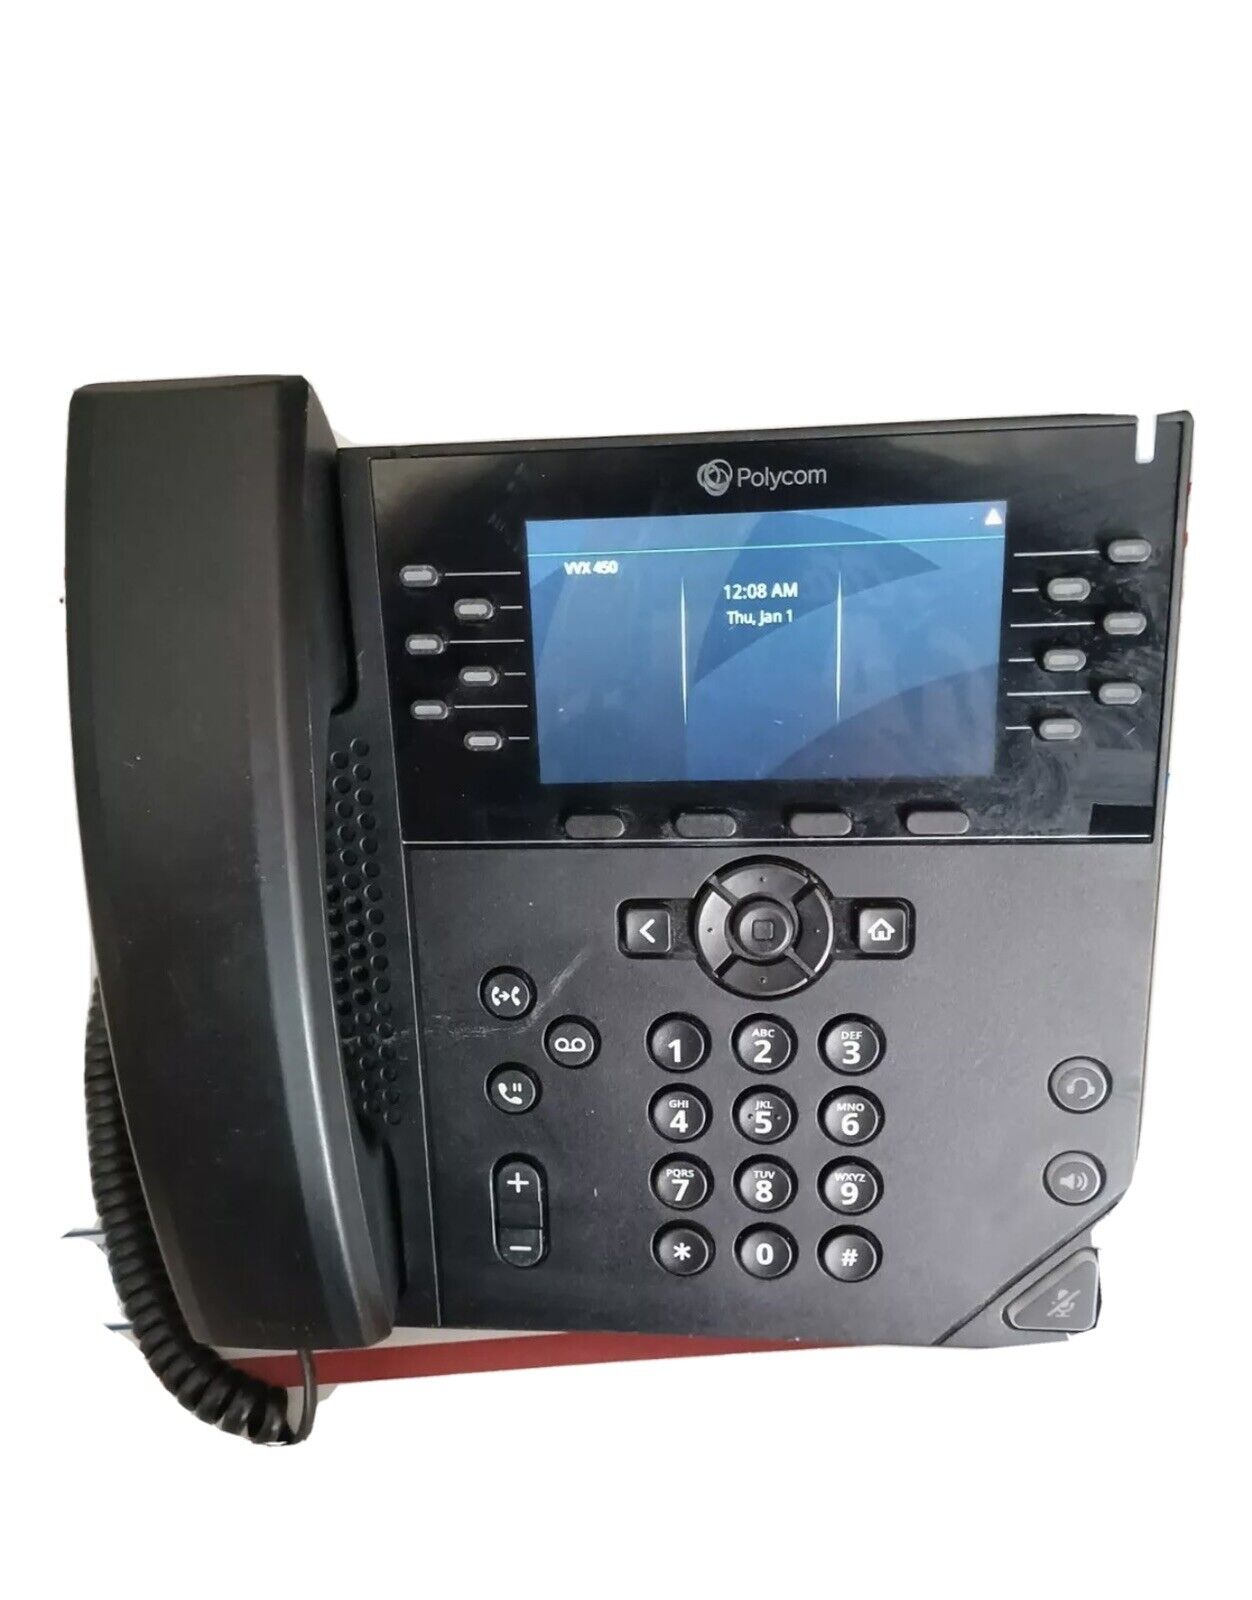 VVX 450 Polycom VoIP Bussines Phone POE 